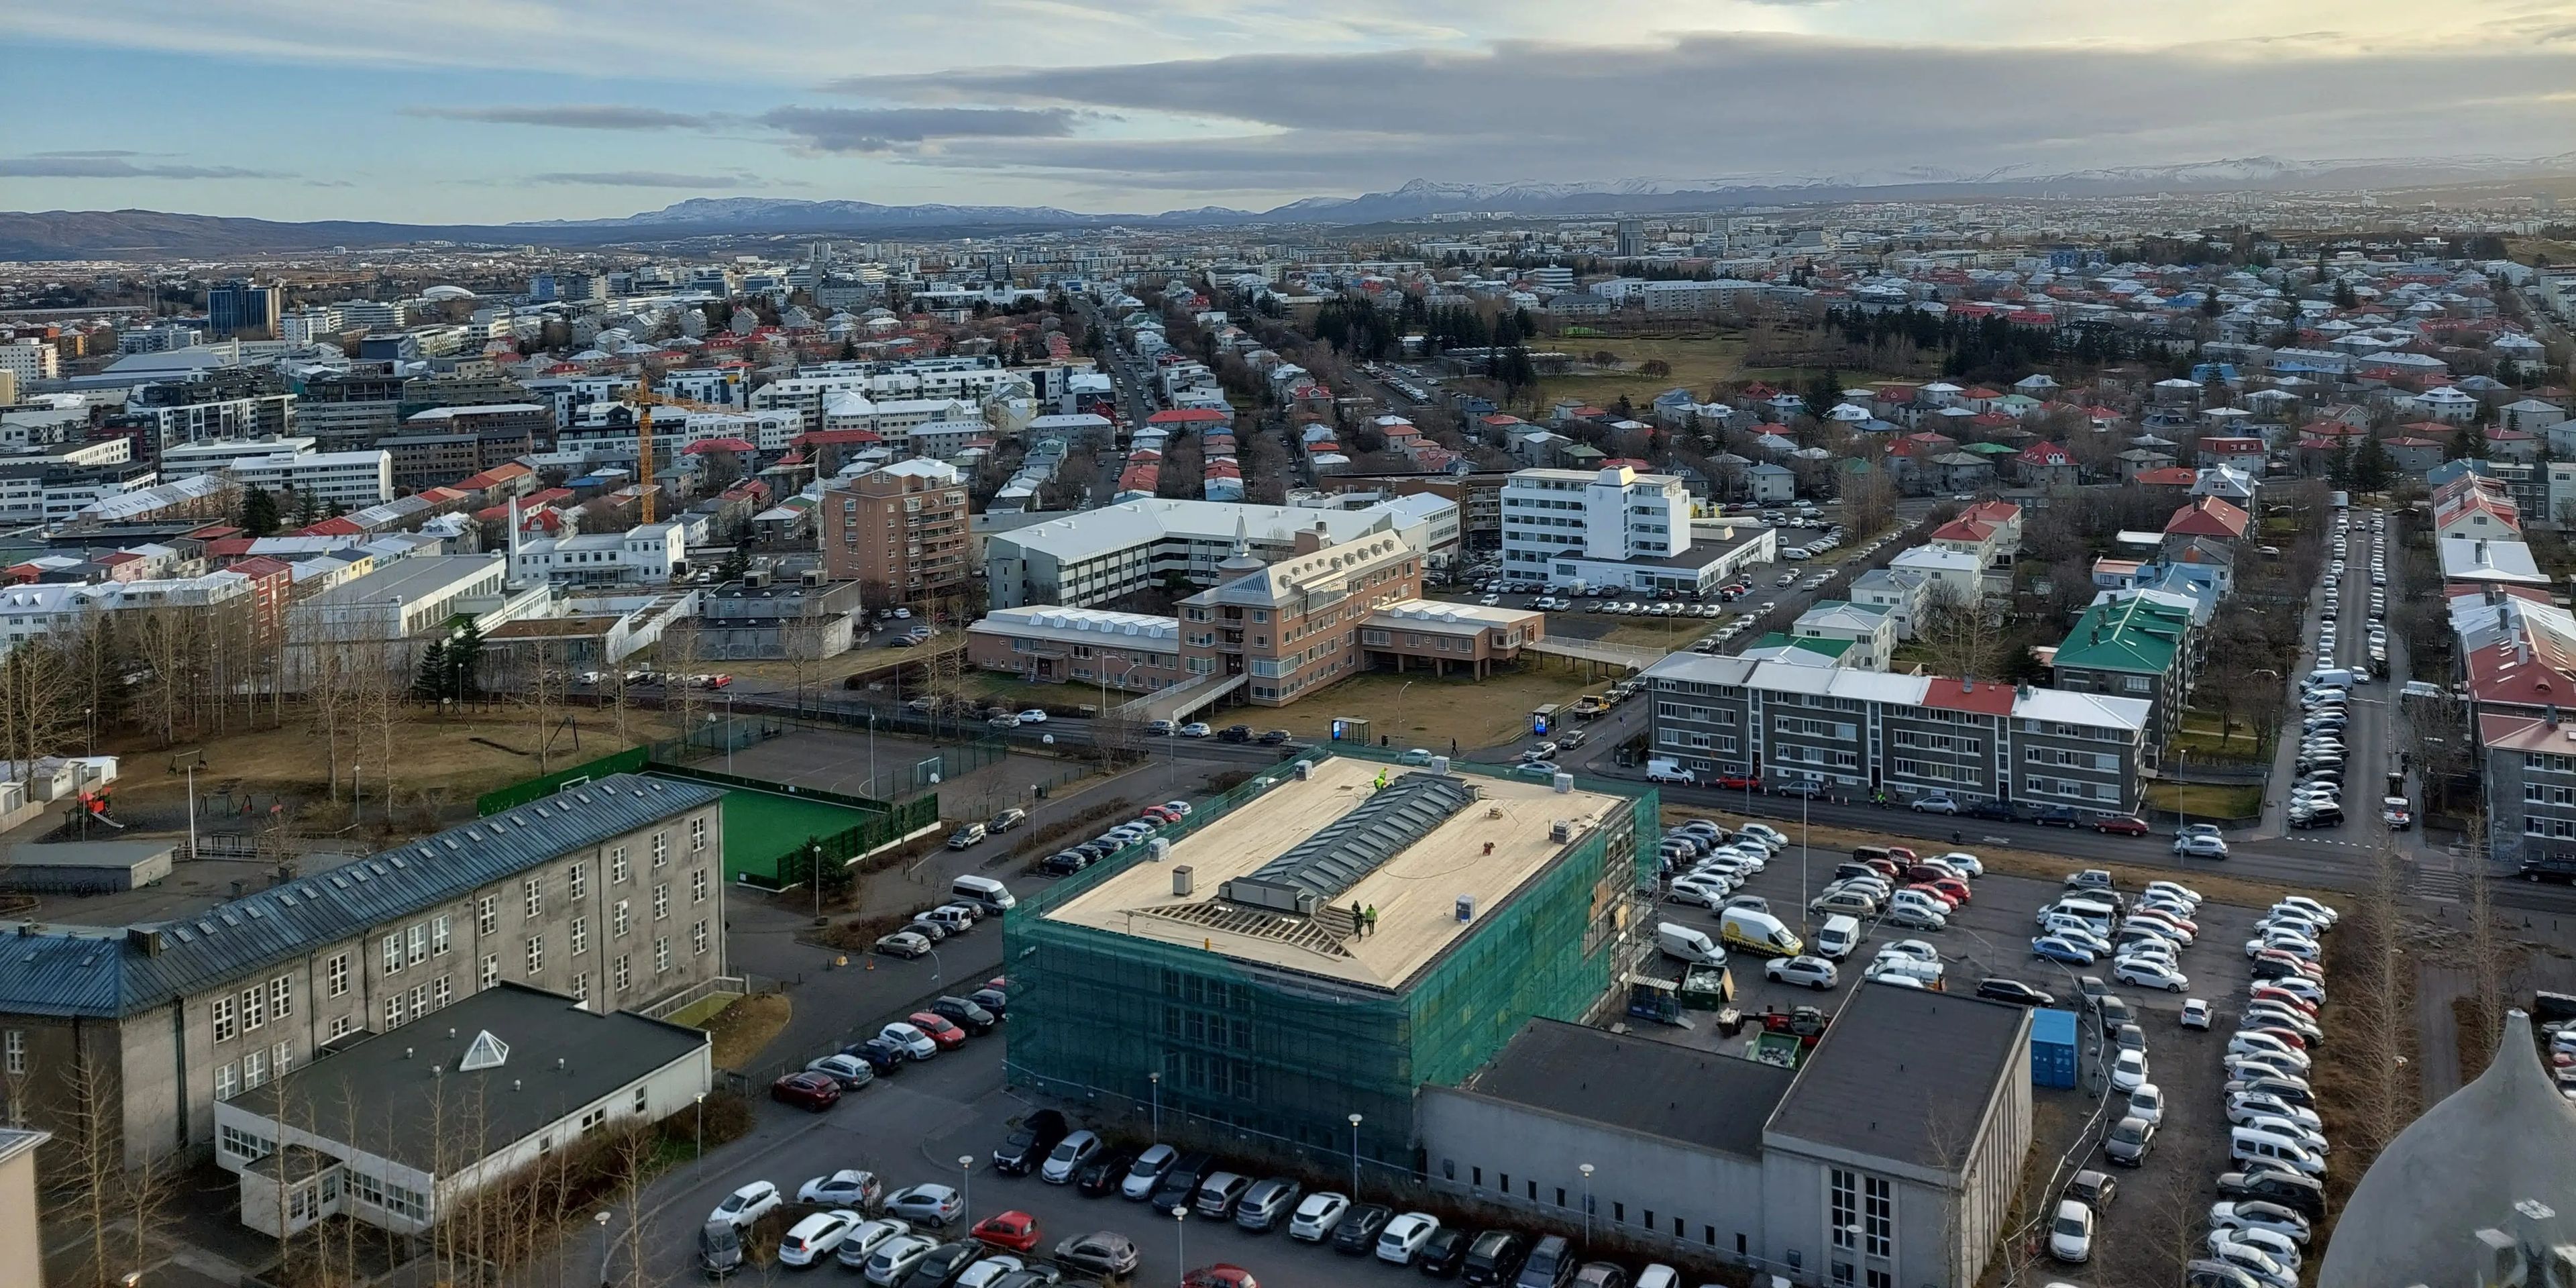 Islandia tiene unos 397.000 habitantes, de los cuales unos 140.000 viven en Reikiavik.